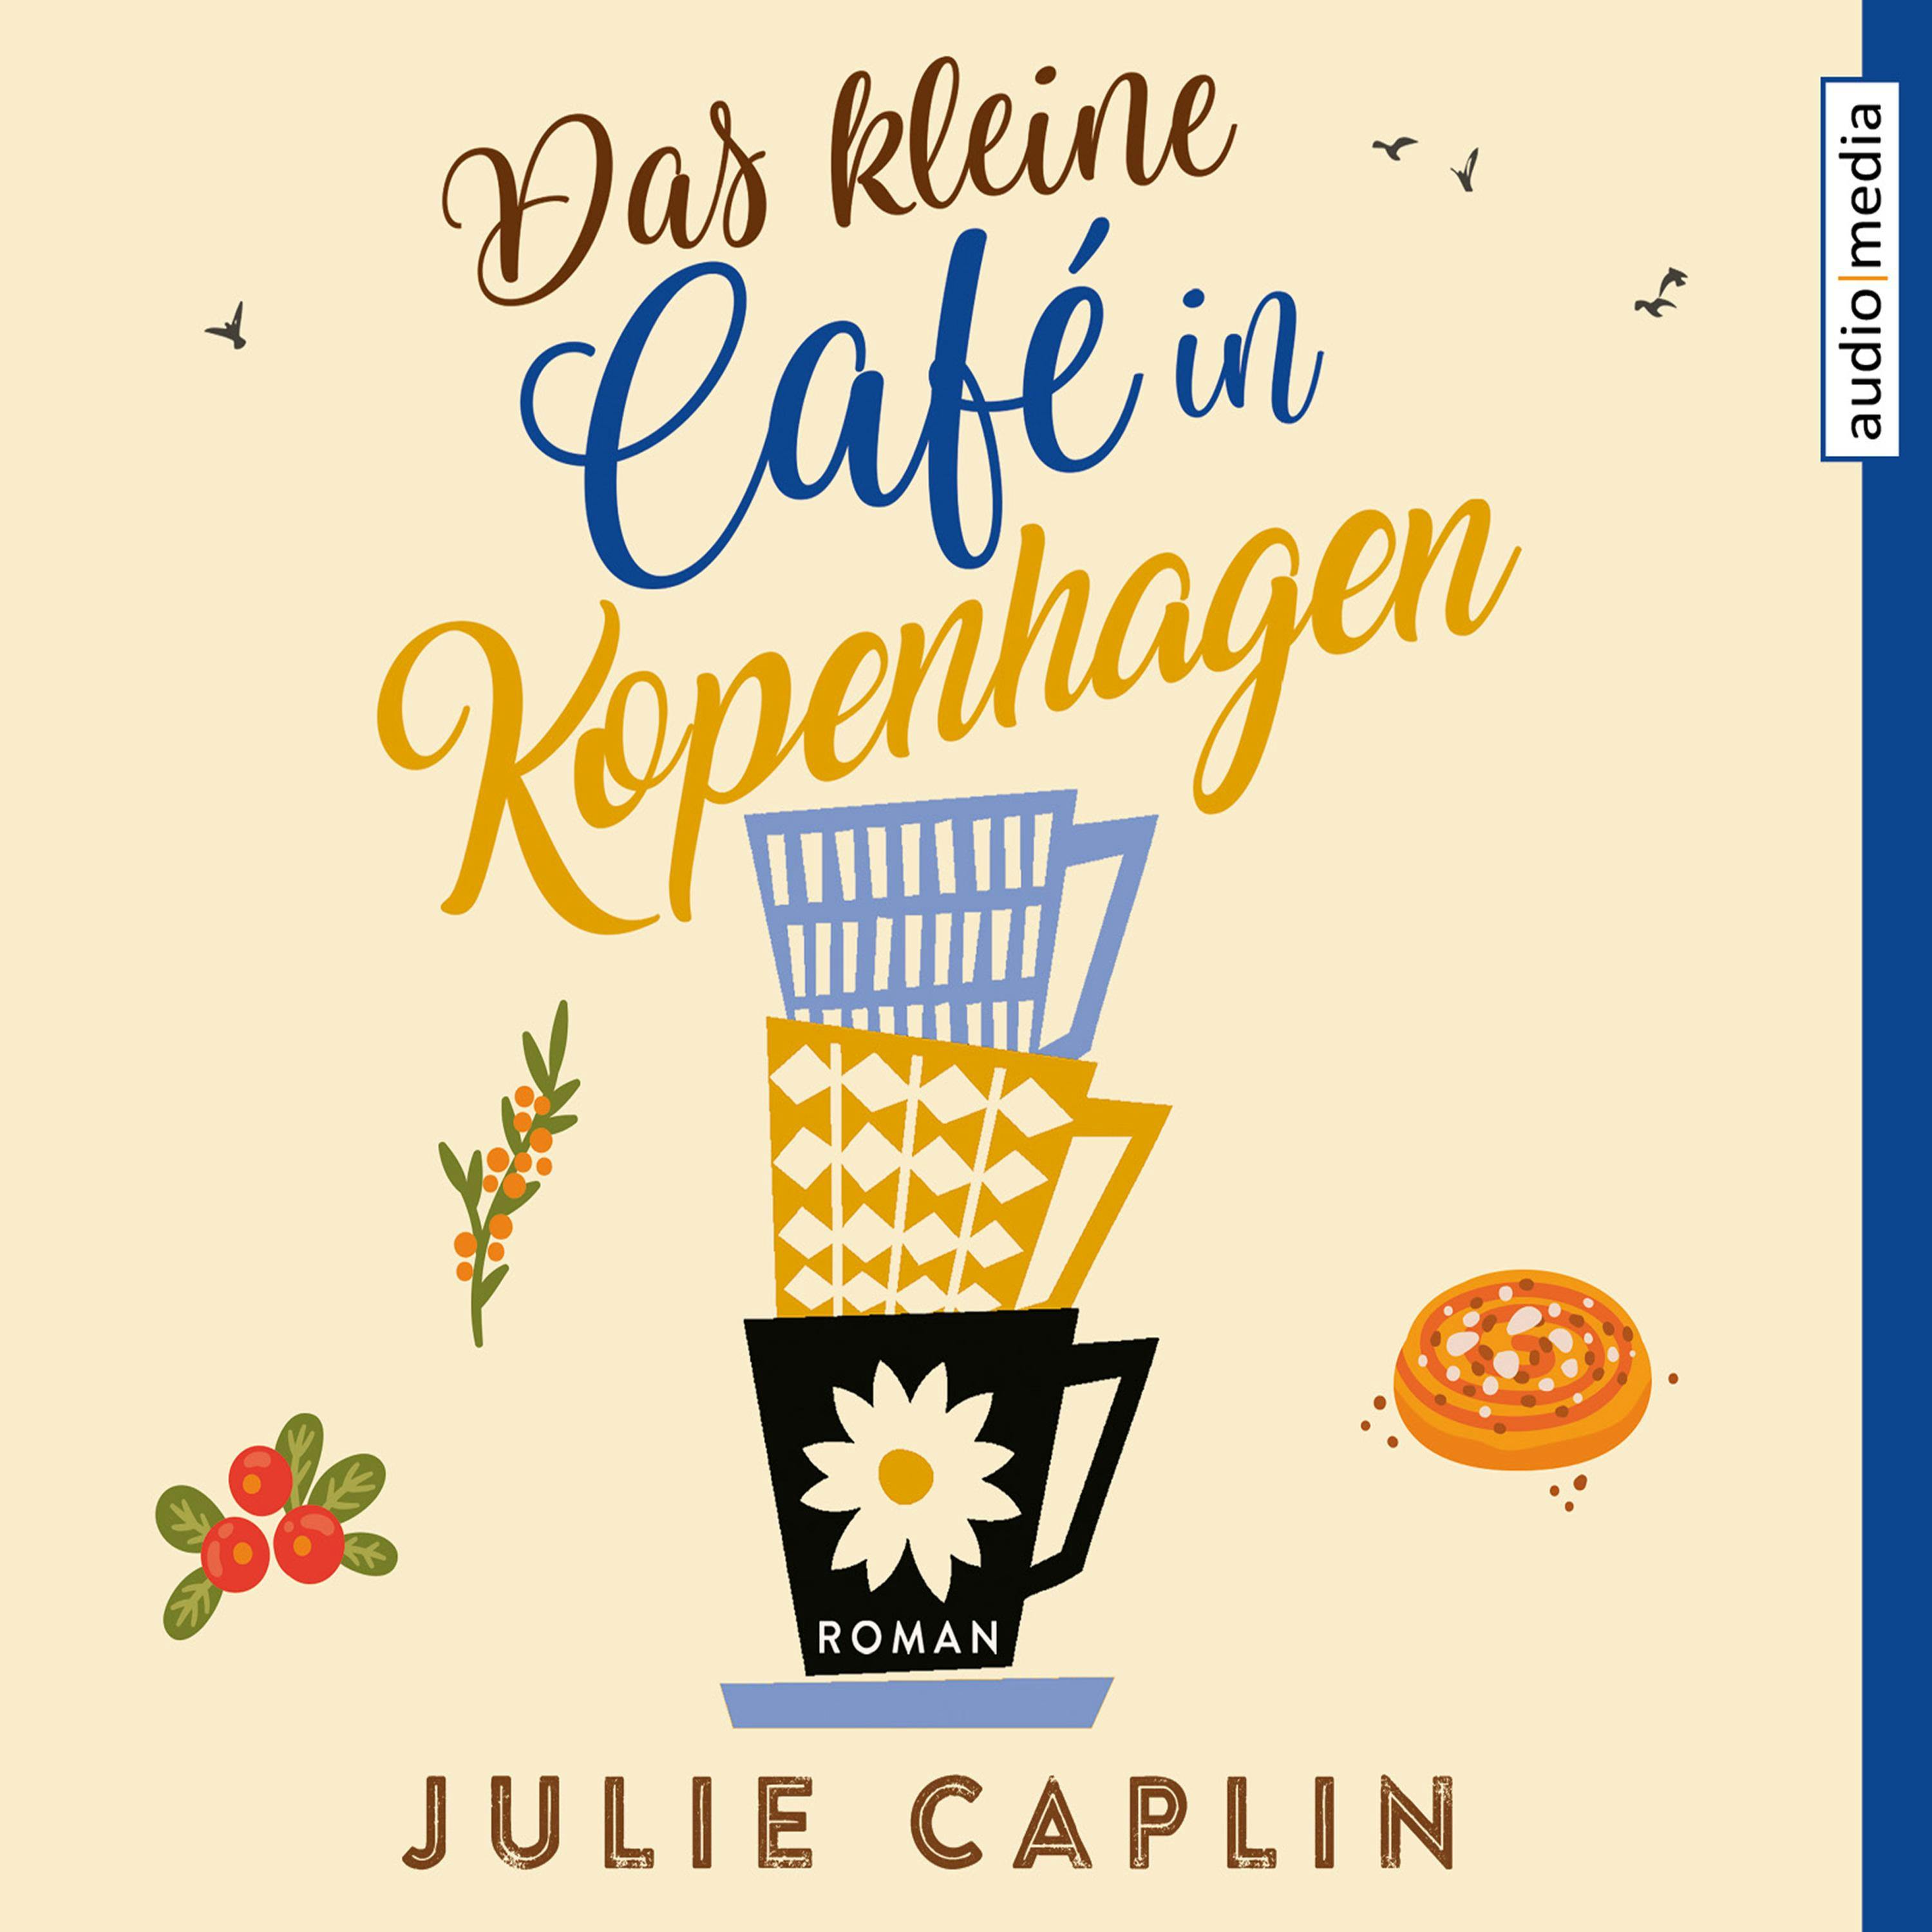 Das kleine Café in Kopenhagen - Julie Caplin